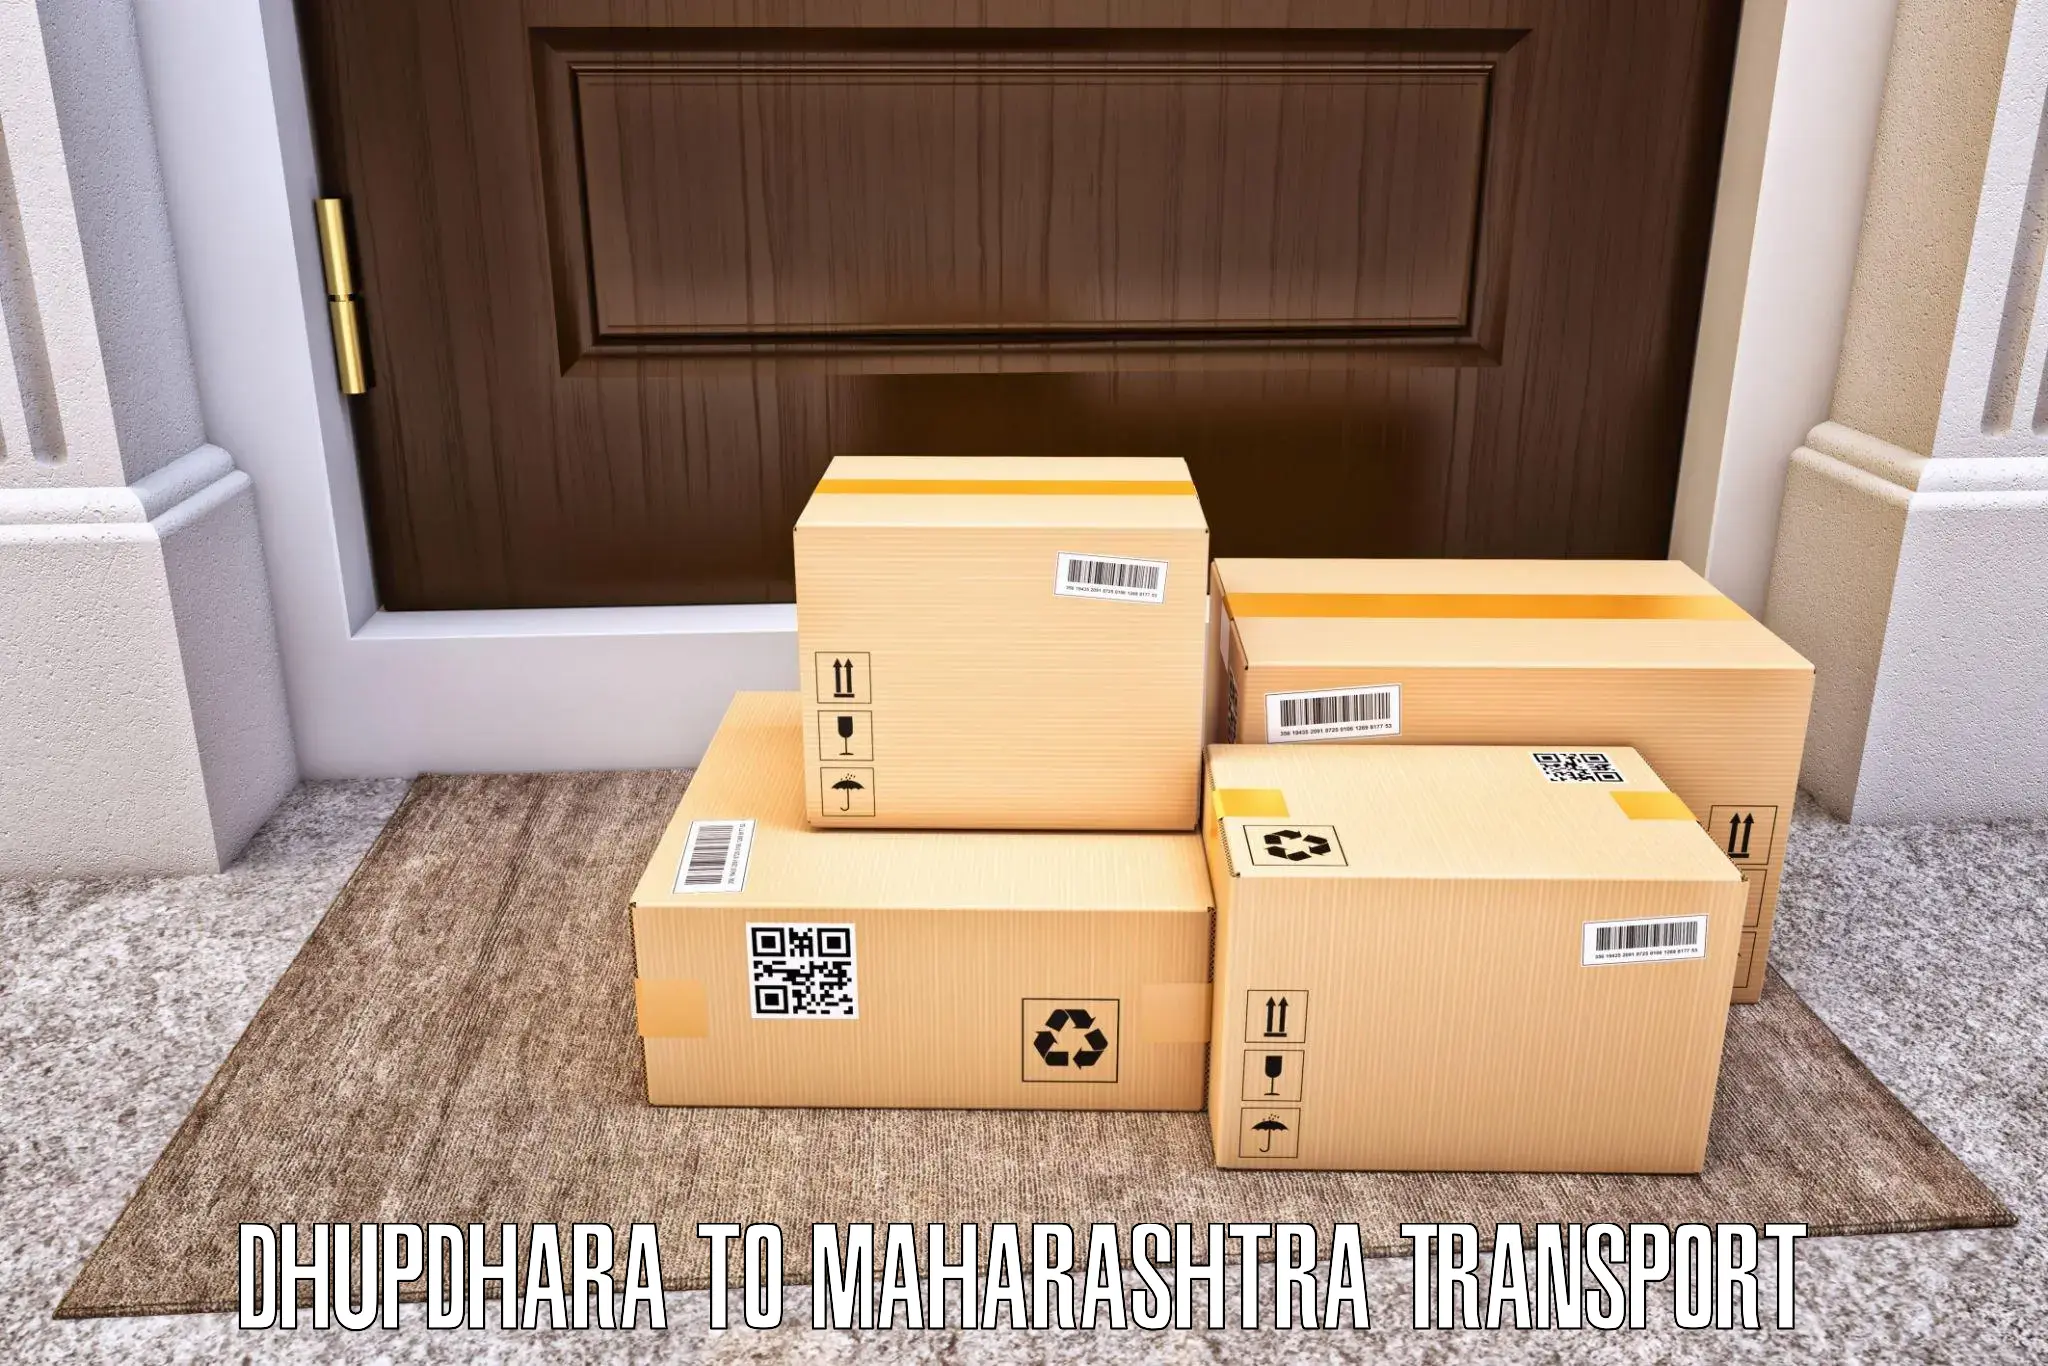 Shipping partner Dhupdhara to Vaijapur